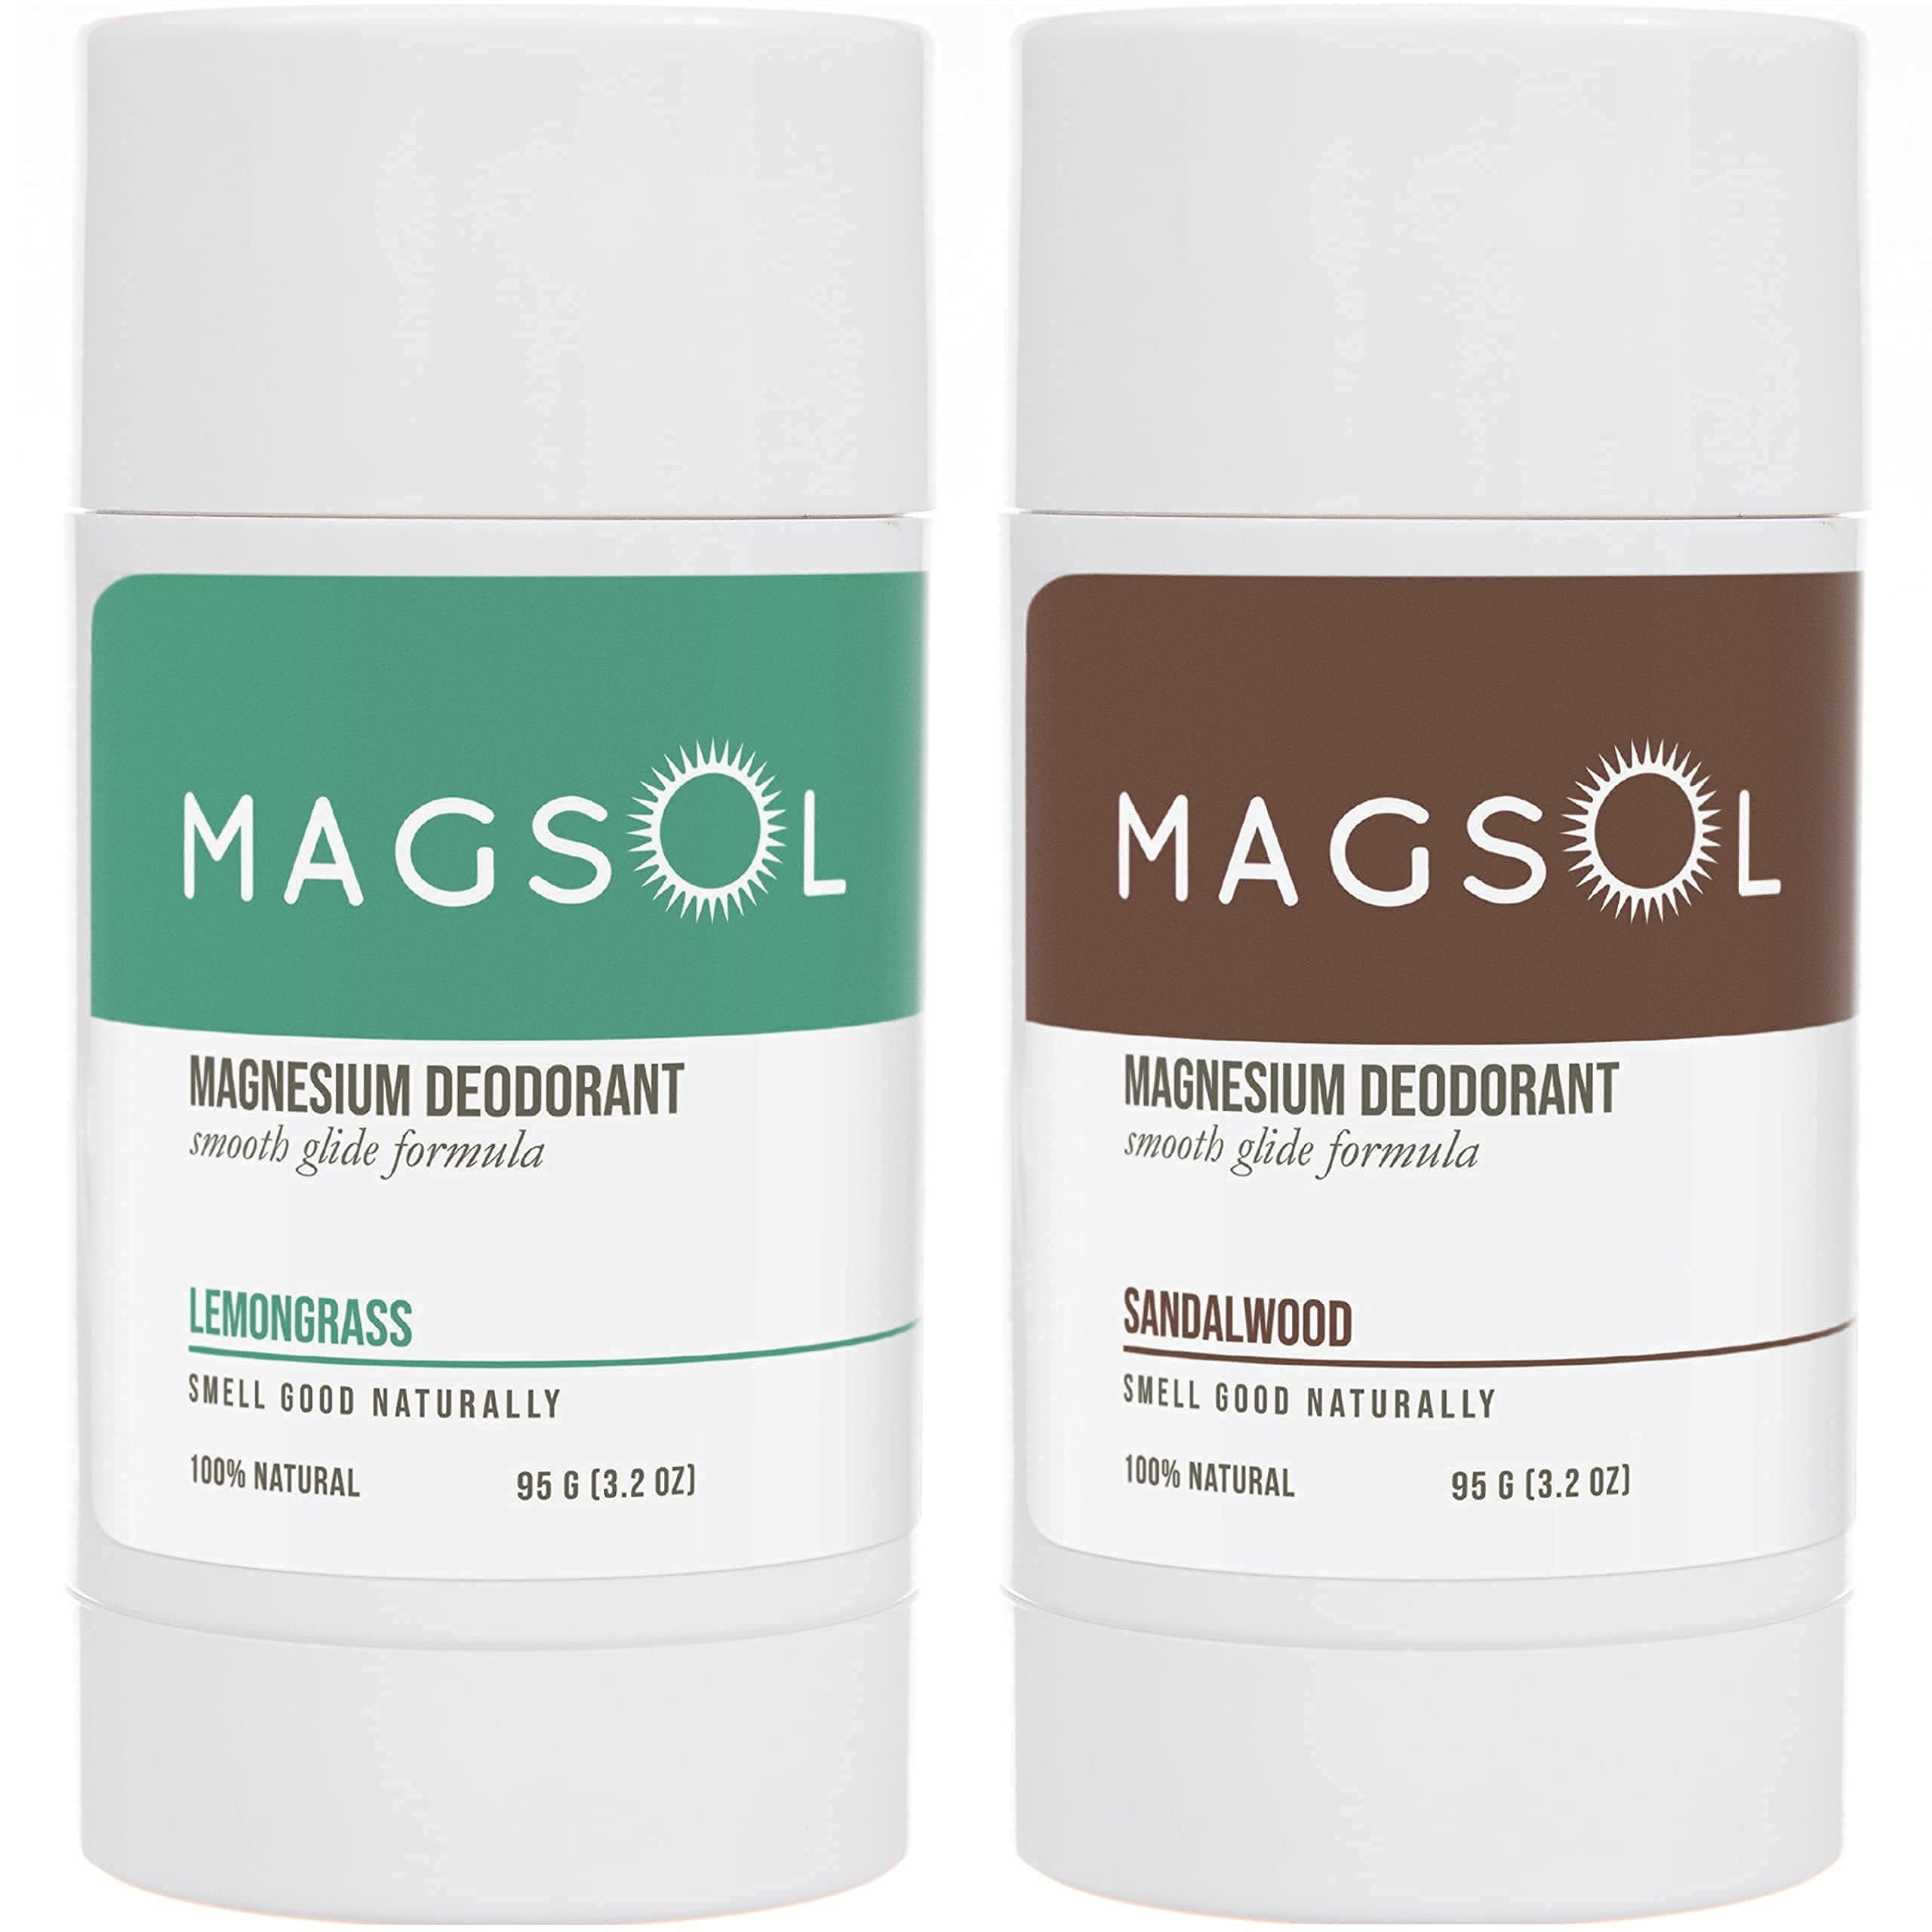 MAGSOL Natural Deodorant for Men & Women - Mens Deodorant with Magnesium - Perfect for Ultra Sensitive Skin, Aluminum Free Deodorant for Women, Baking Soda Free (2 Pack: Lemongrass & Sandalwood)